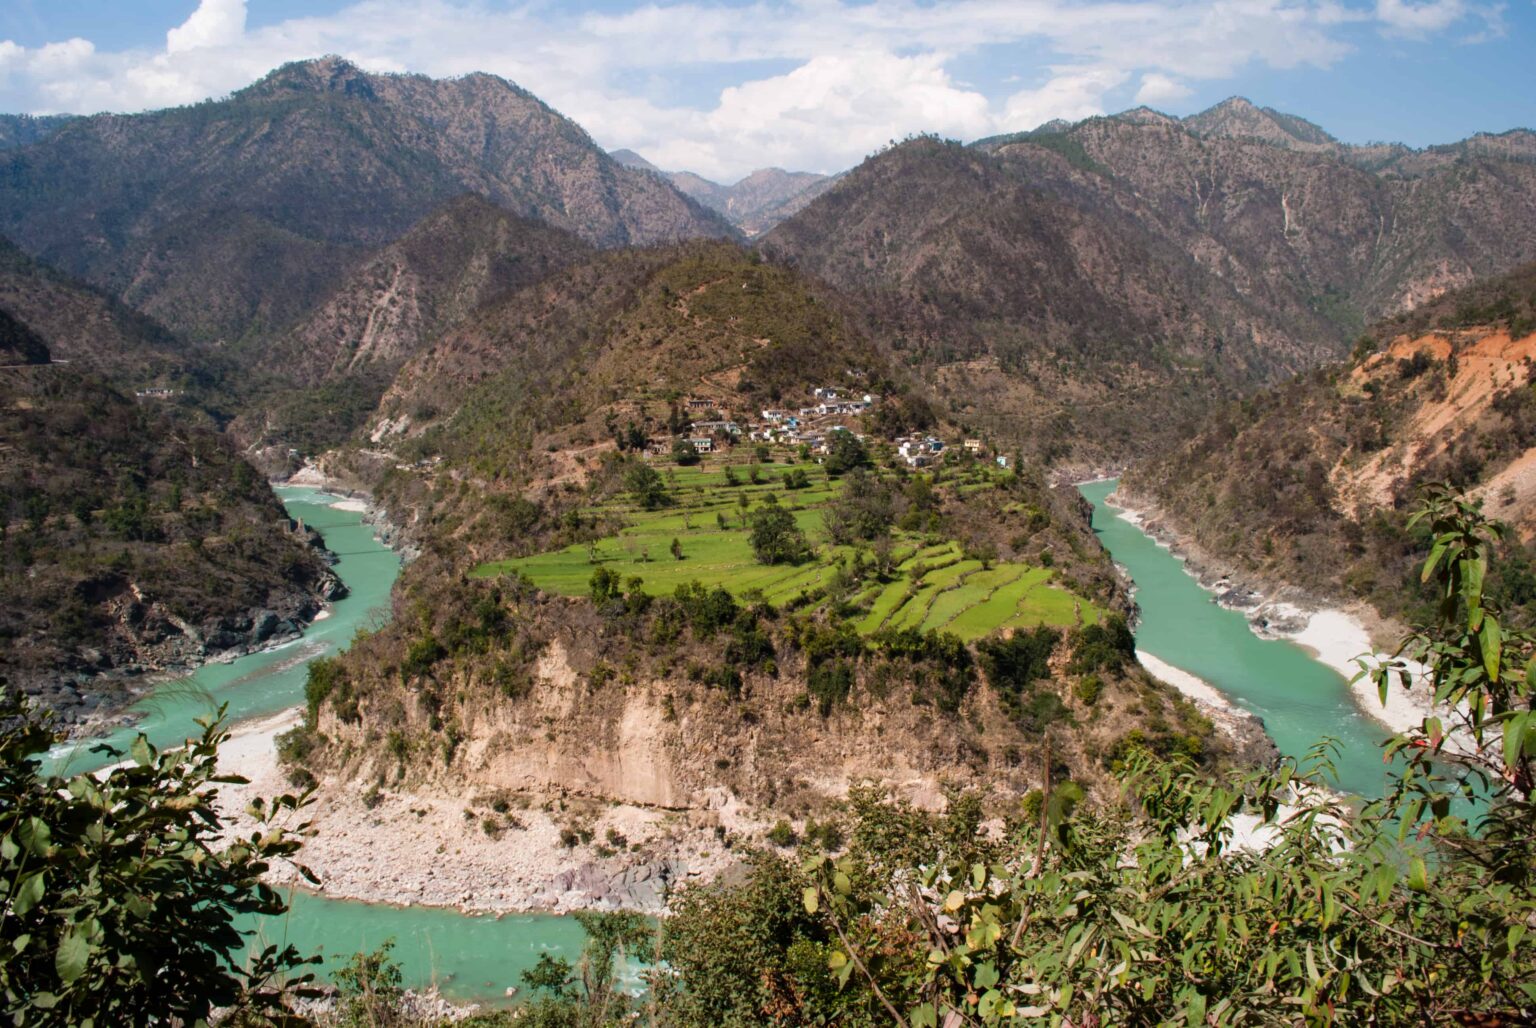 Alaknanda River, curving its way through the Himalayas